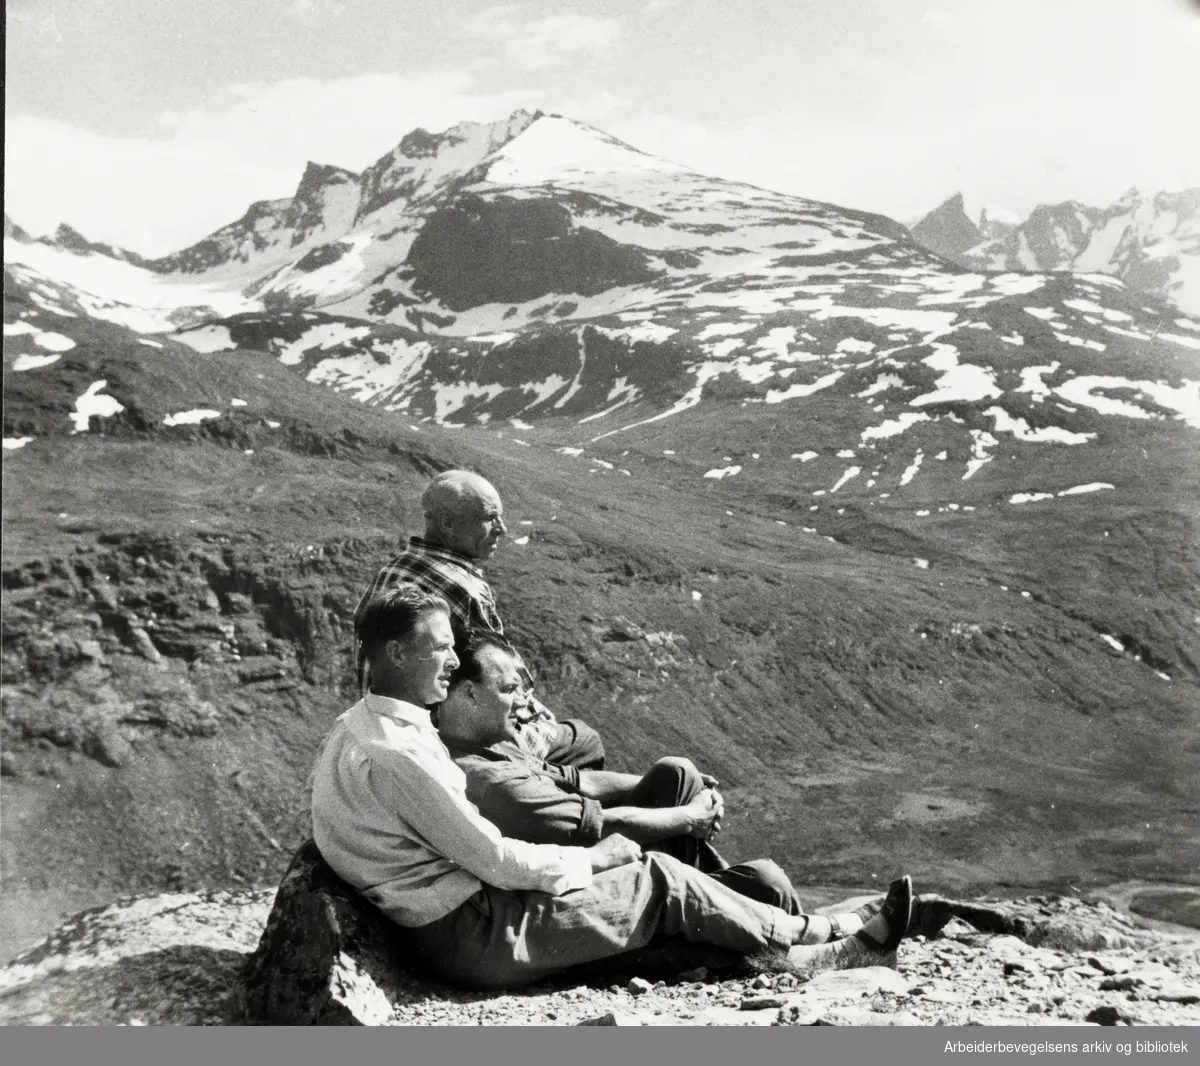 Martin Tranmæl på tur. Fra venstre: Einar Linderud, Odd Sevje og Martin Tranmæl. Tekst bakpå bildet: Fortun 1959